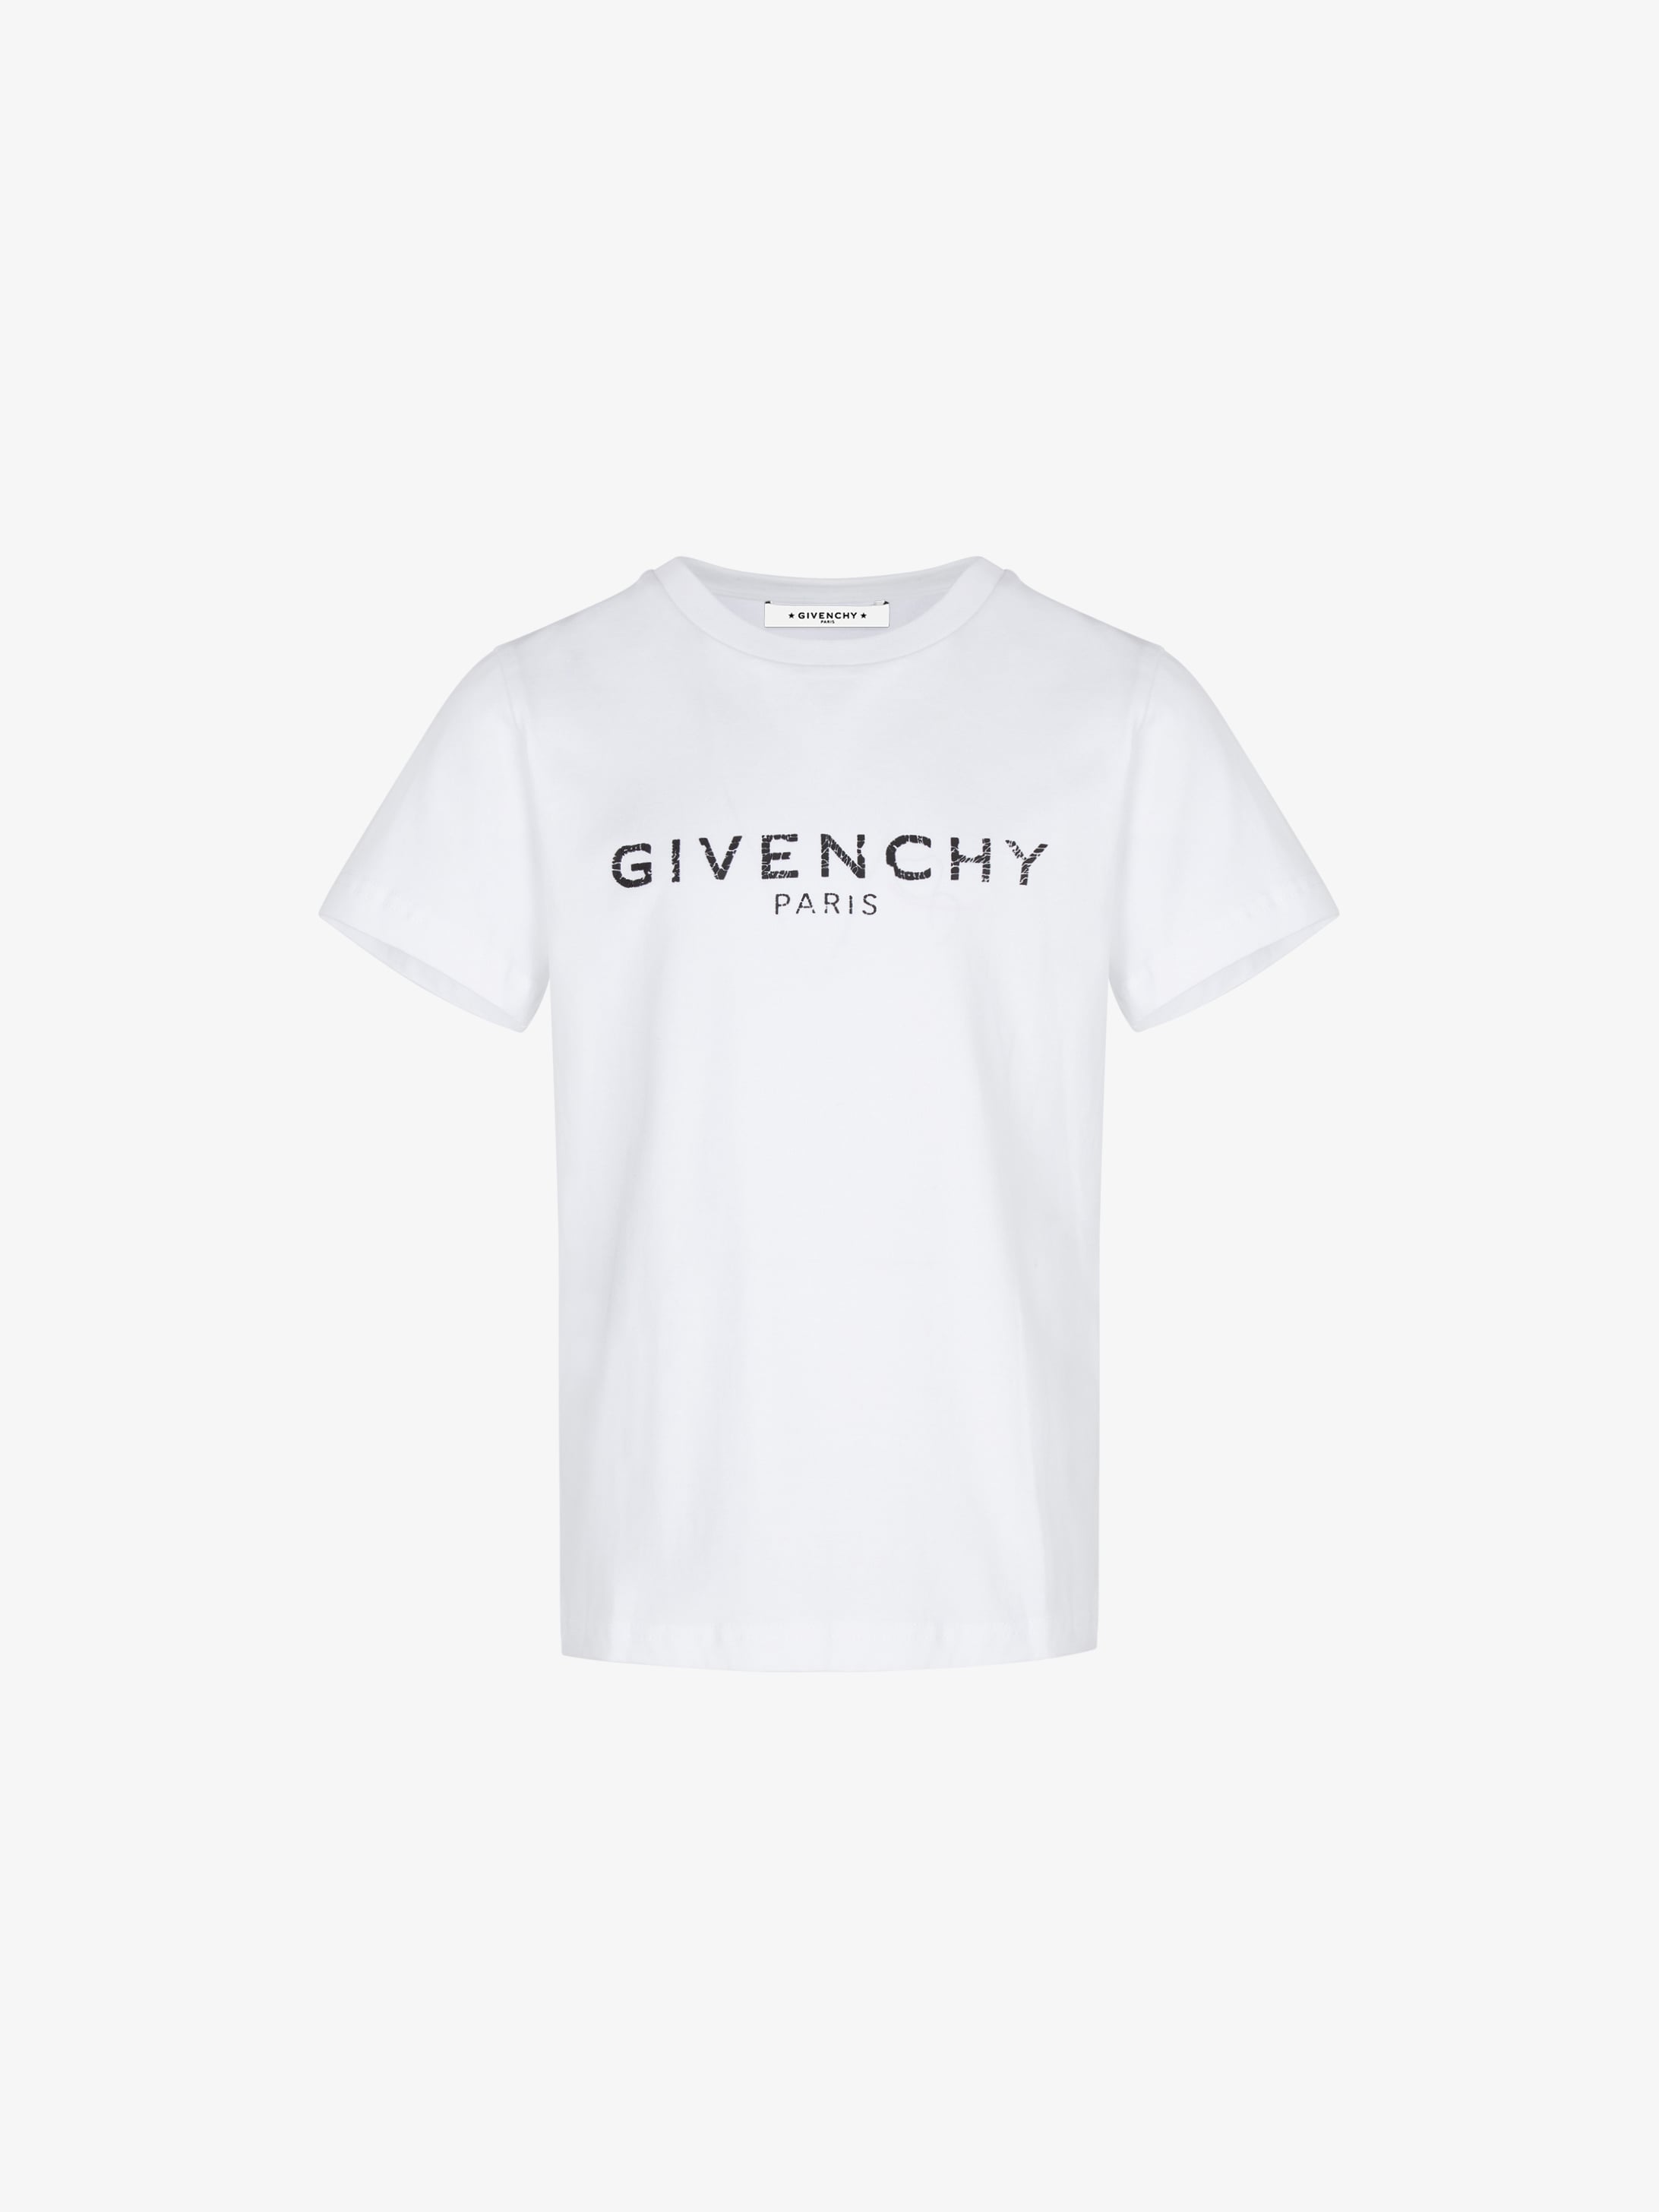 givenchy printed t shirt